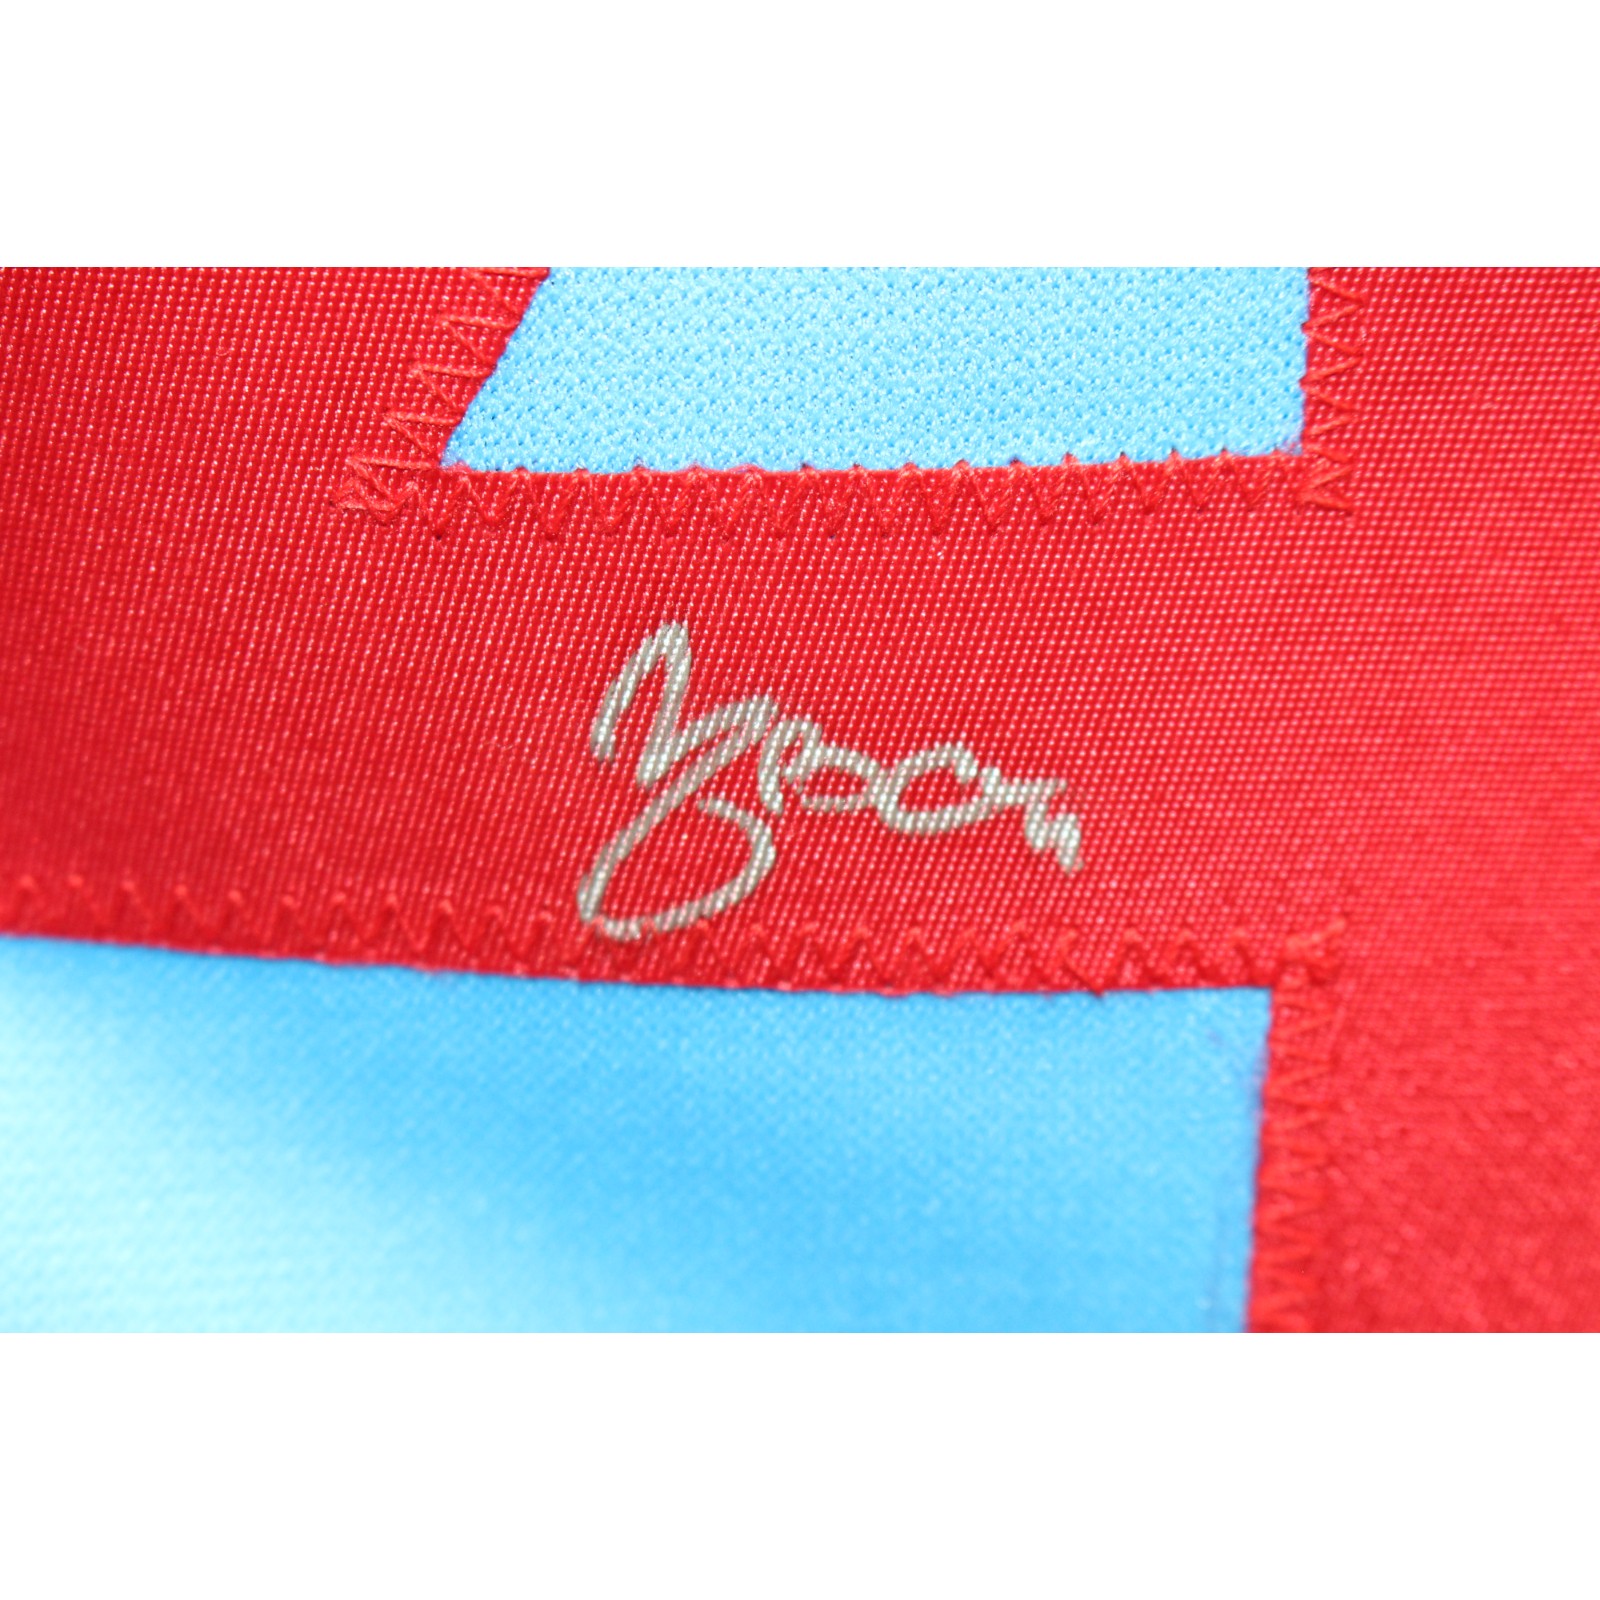 Yadier Molina Autographed/Signed Pro Style Blue Jersey JSA